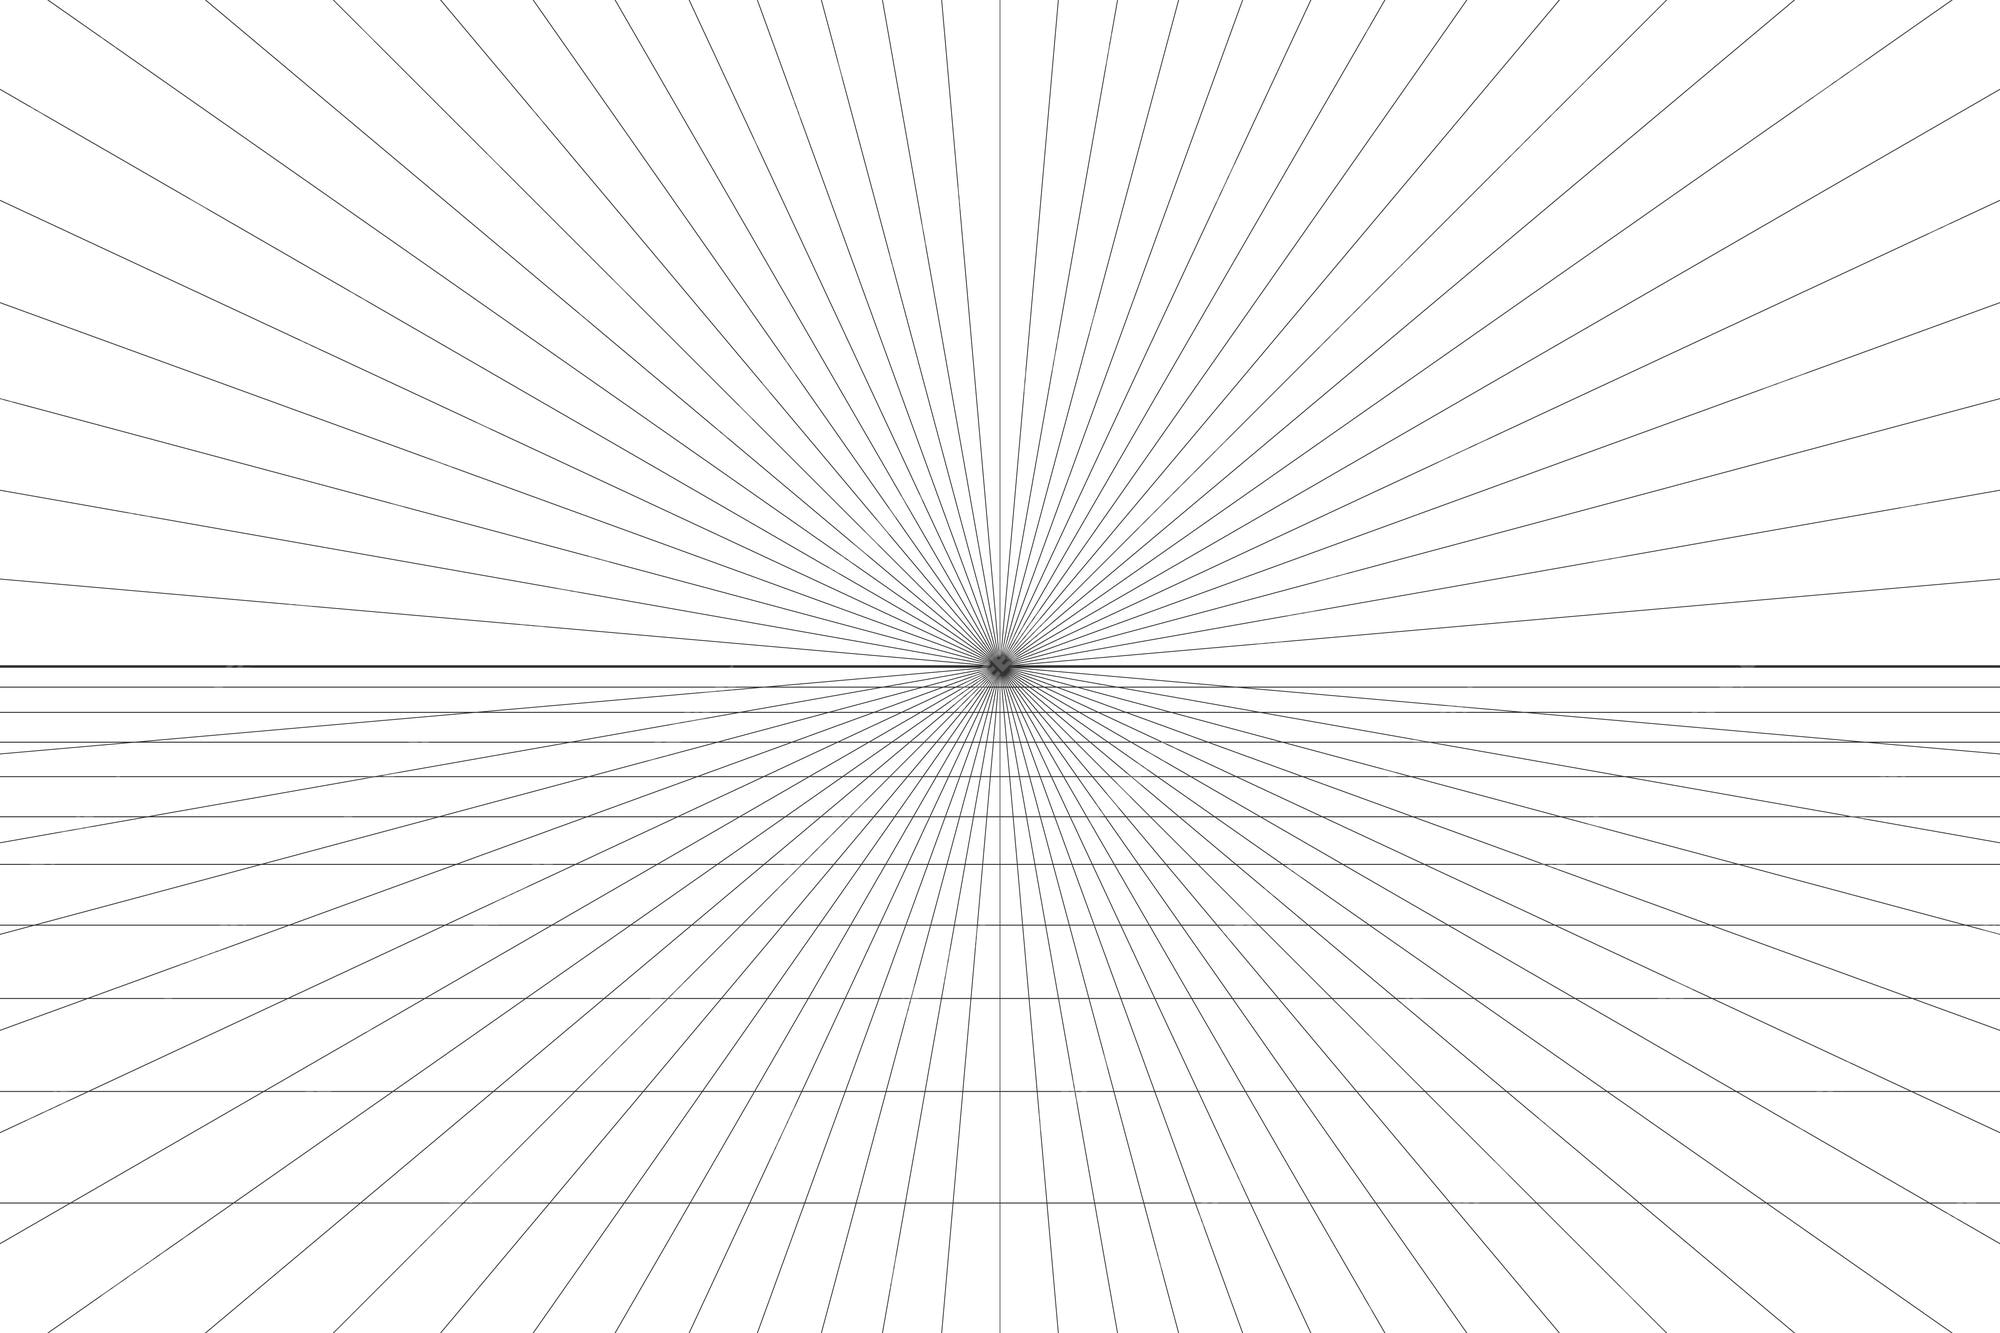 Mẫu nền trắng hình lưới một điểm quan sát: Với mẫu nền trắng hình lưới một điểm quan sát, sự chuyển động của đường lưới trở nên rõ ràng và hài hòa. Hãy cùng chiêm ngưỡng mẫu thiết kế này và cảm nhận được cảm giác thú vị khi nhìn thấy tác động của đường lưới này.